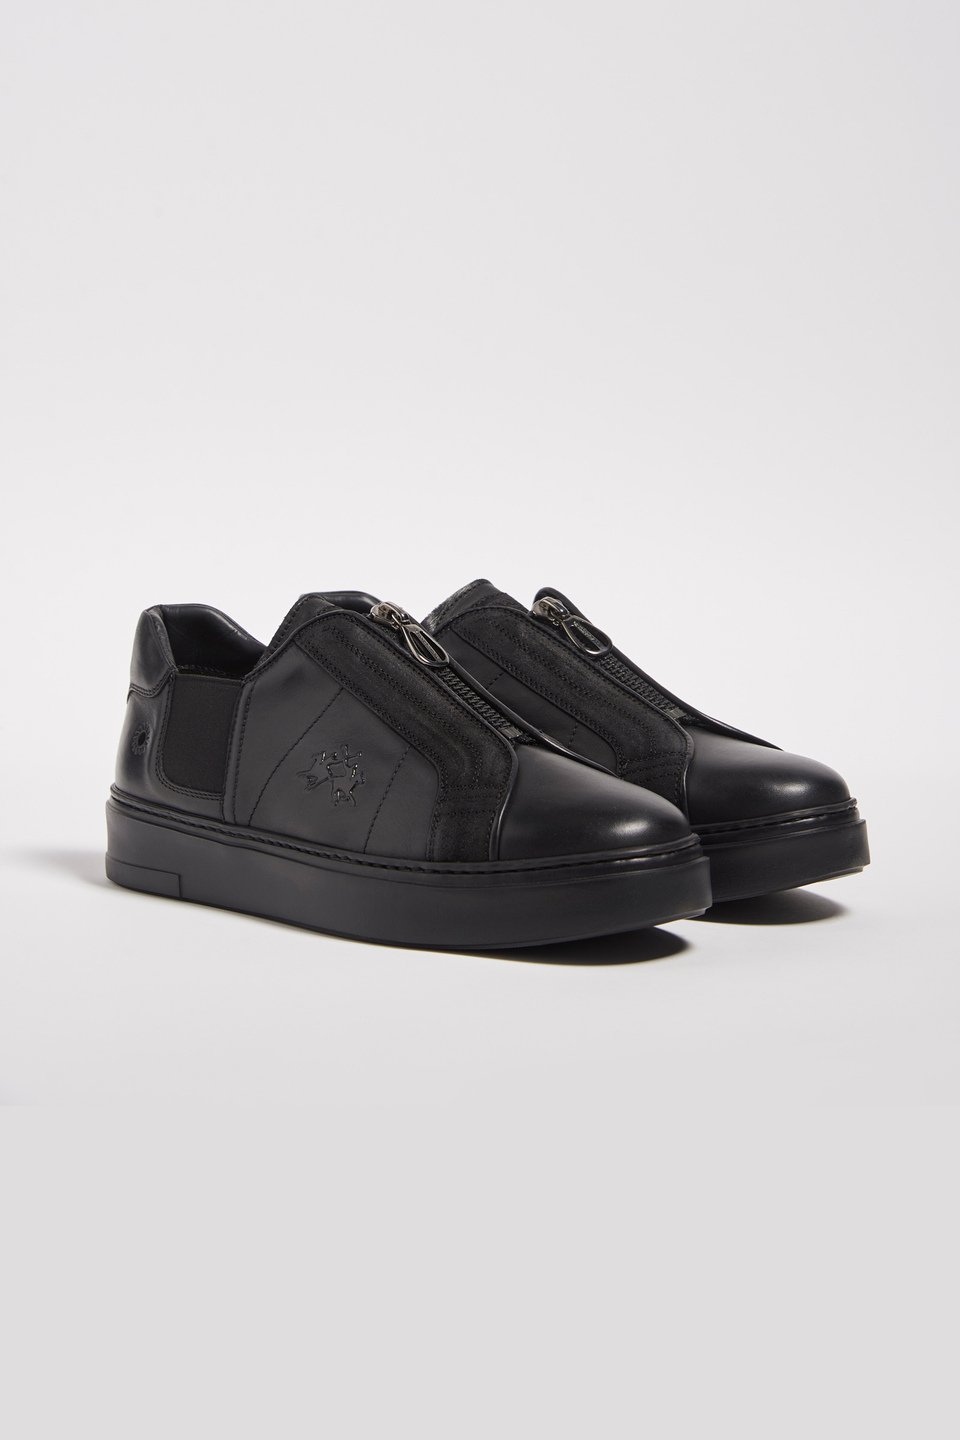 Chaussures en cuir avec semelle renforcée noire | La Martina - Official Online Shop